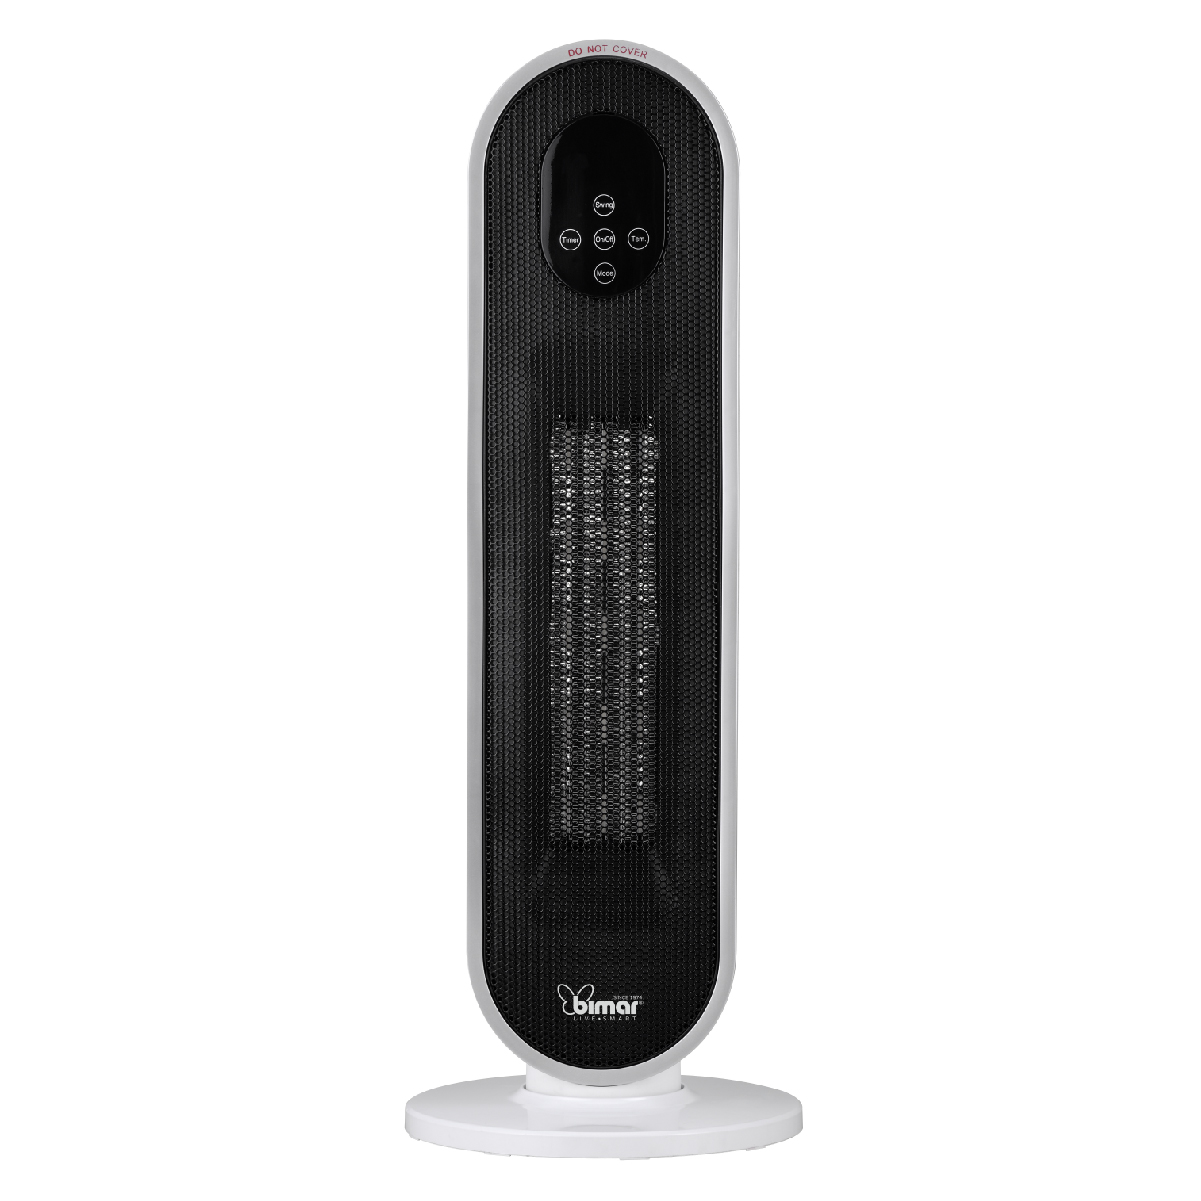 contrôle vocal compatible Alexa et Google Assistant Chauffage électrique basse consommation bimar HP126 Wi-Fi Chauffage soufflant céramique à colonne 